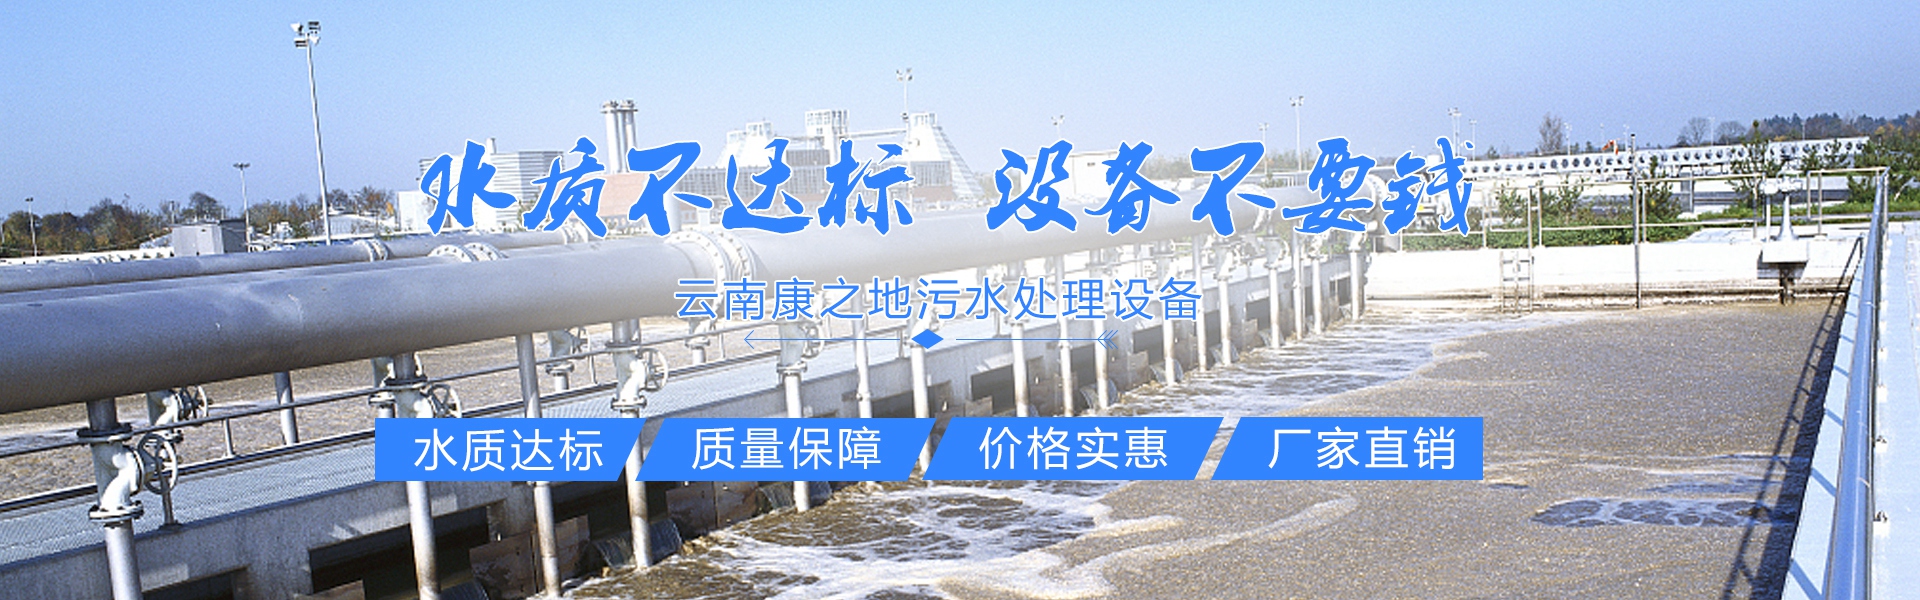 云南康之地污水处理设备有限公司